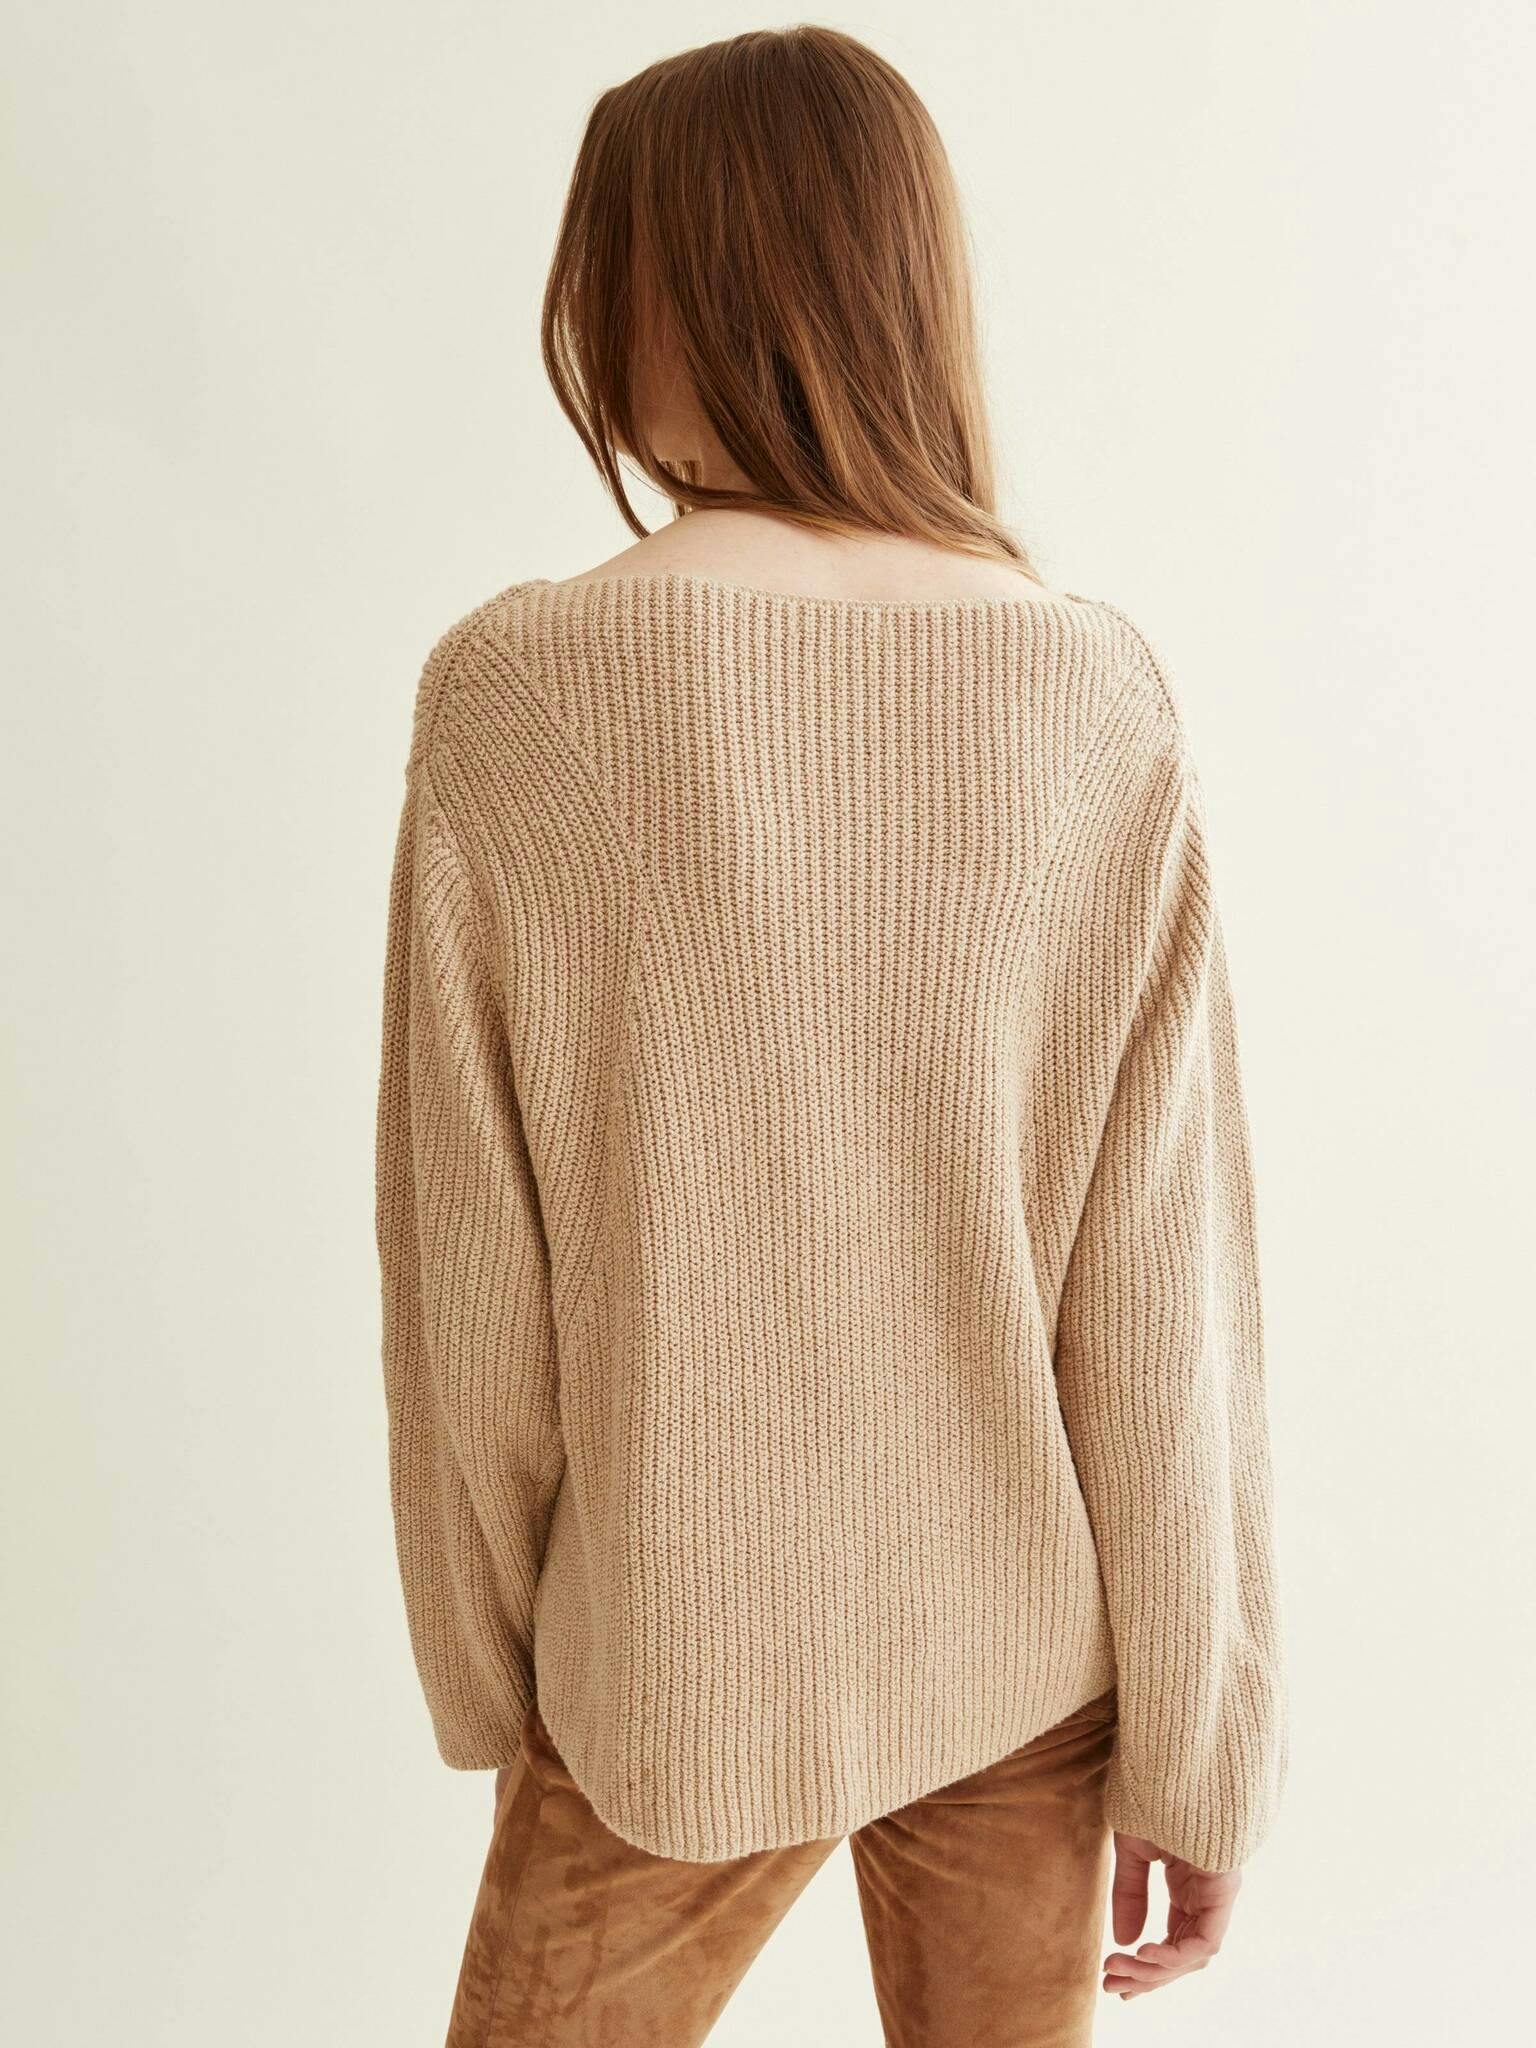 Hunkydory - Danika sweater